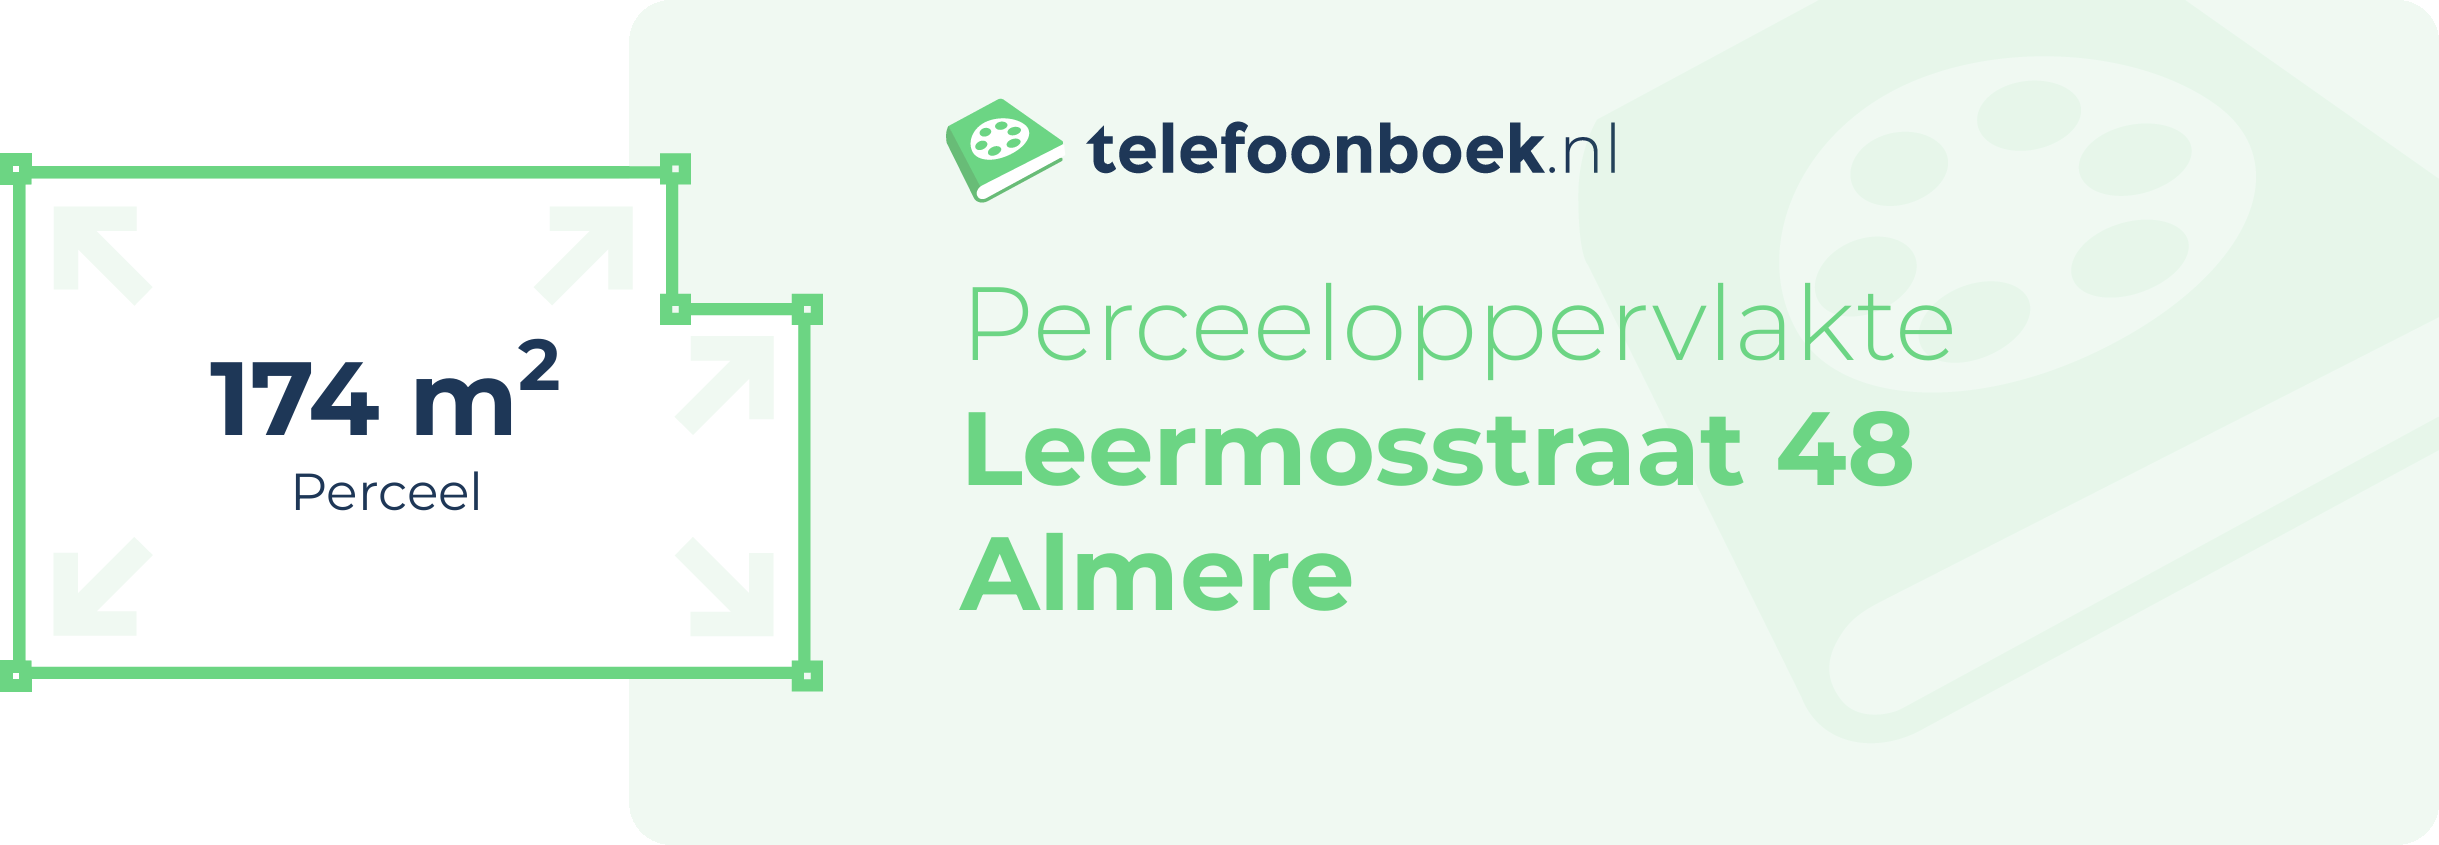 Perceeloppervlakte Leermosstraat 48 Almere